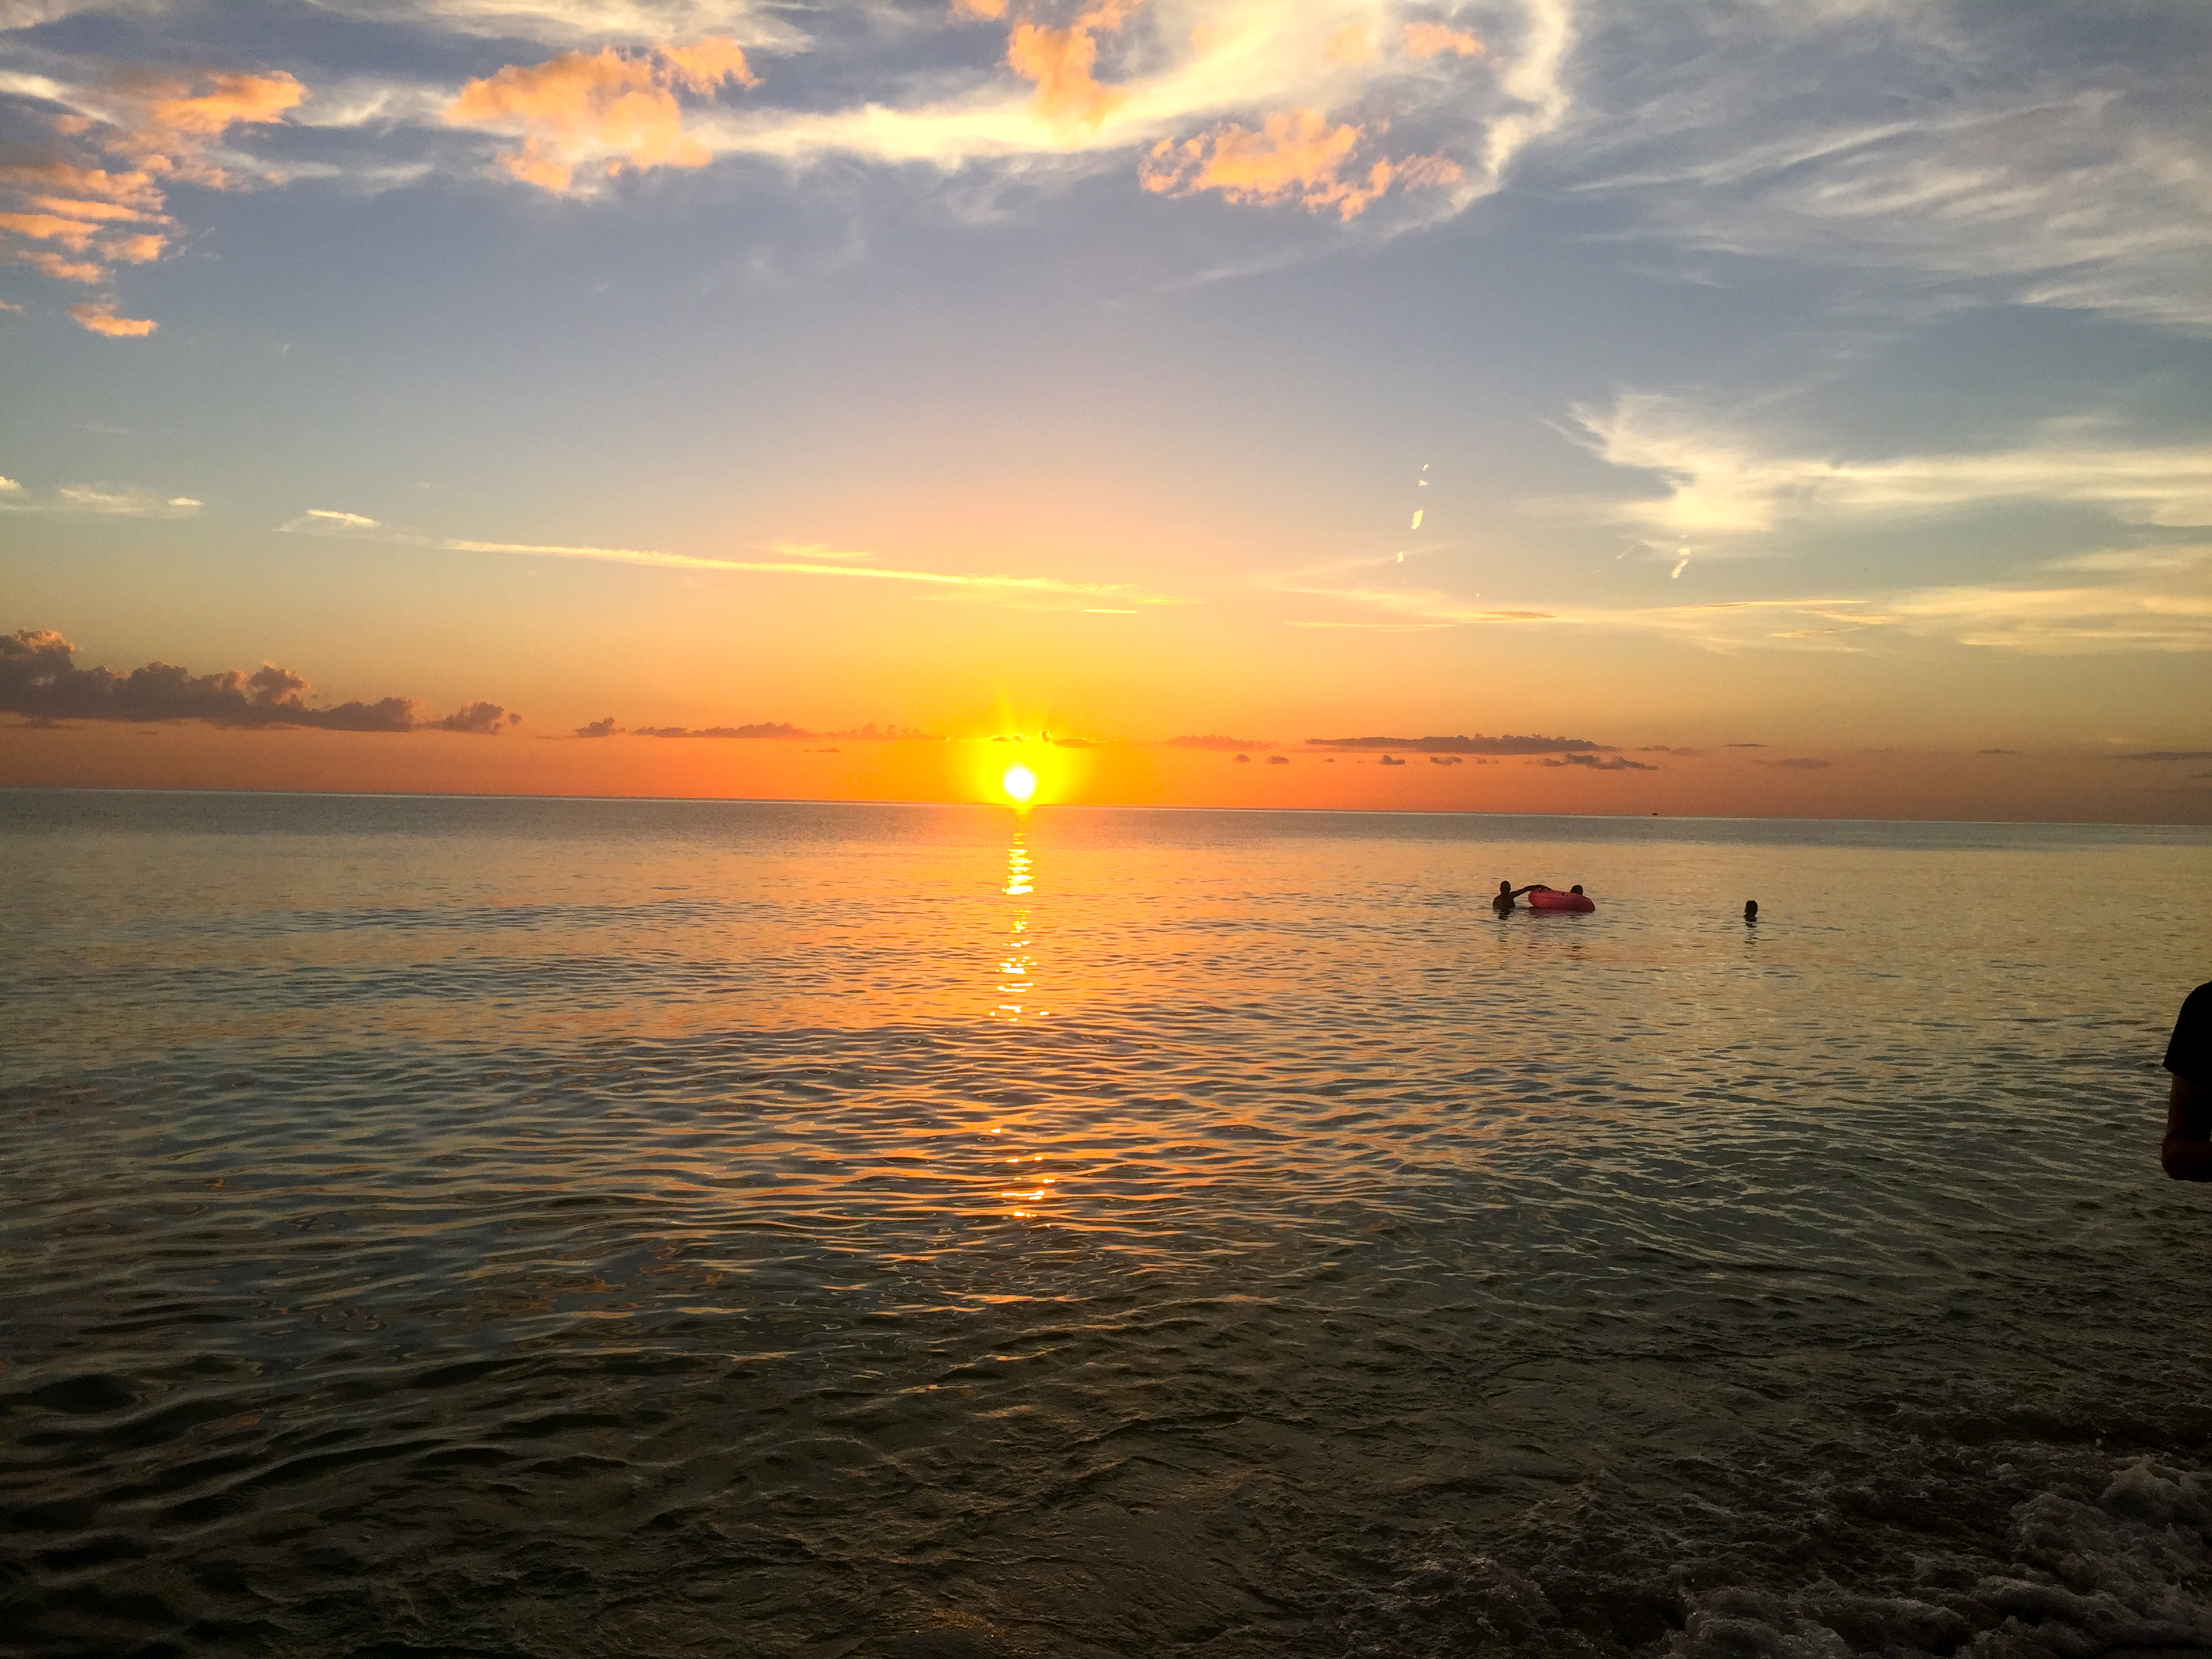 alt="sunset on Naples Beach, Florida"